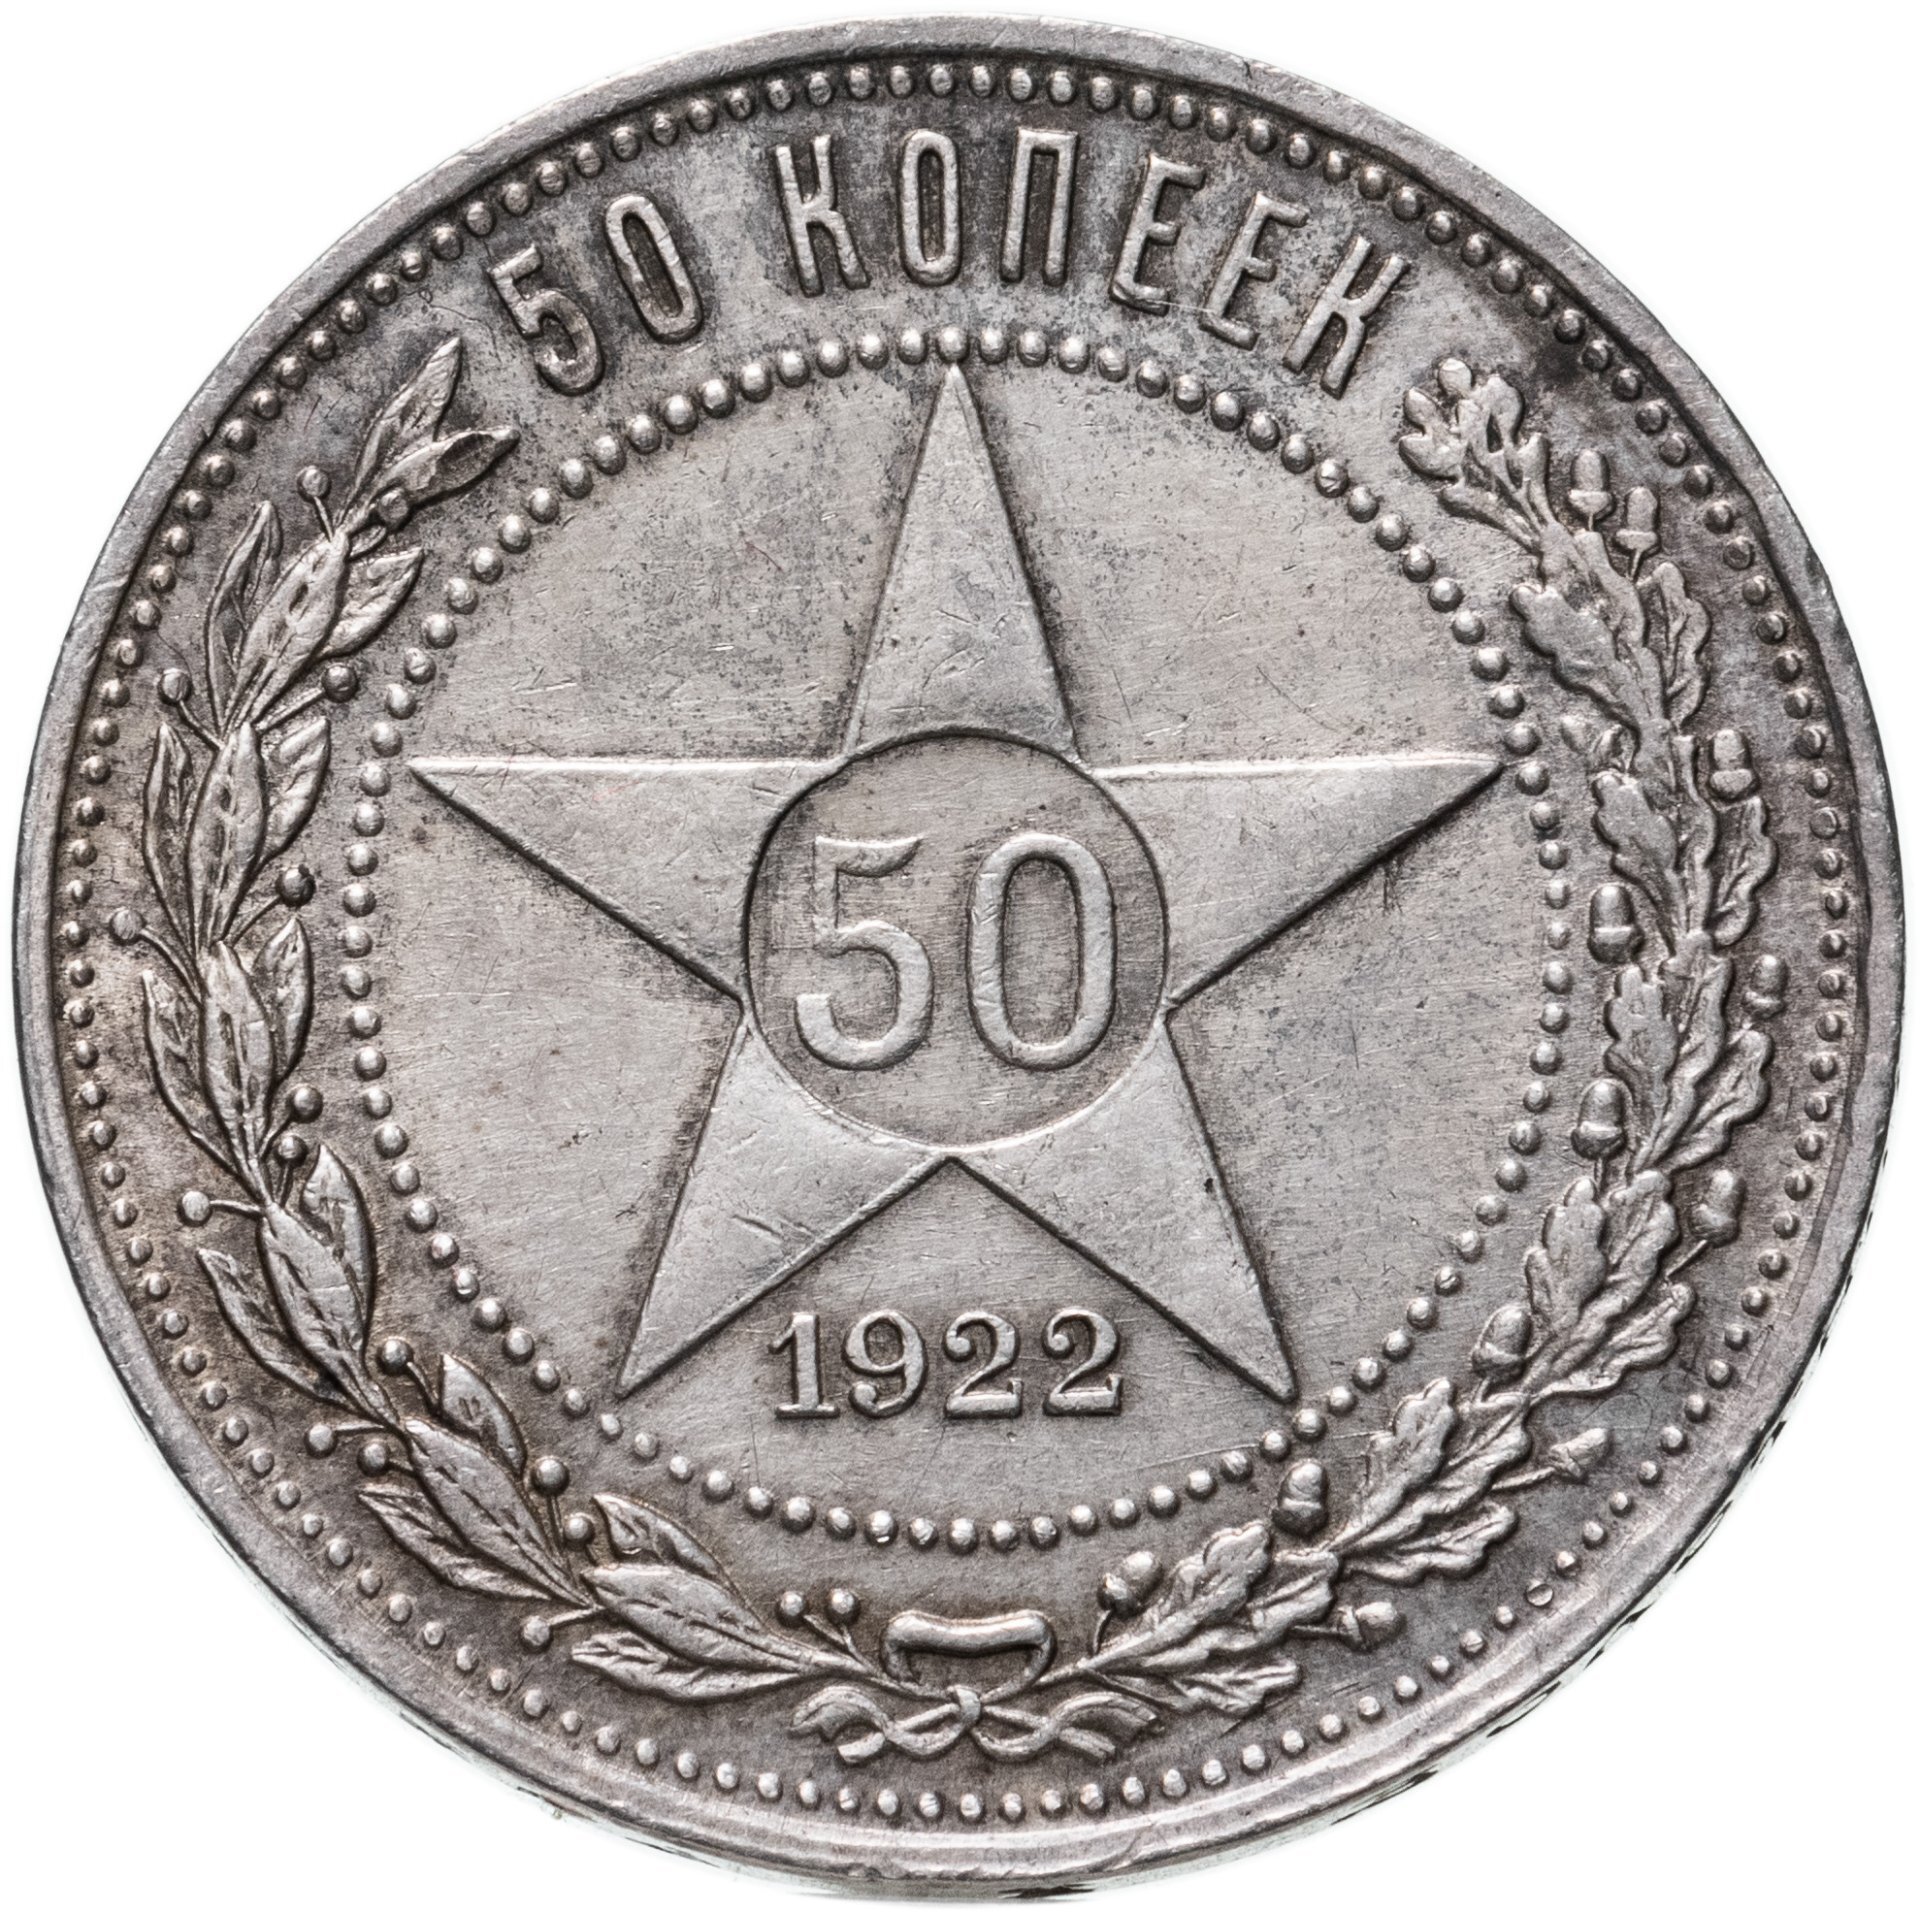 50 копеек 1922 года серебро. Монета 50 копеек 1921 АГ. Монета 50 копеек 1922 АГ. Серебряные монеты СССР С 1921. Серебряная монета СССР 50 копеек.